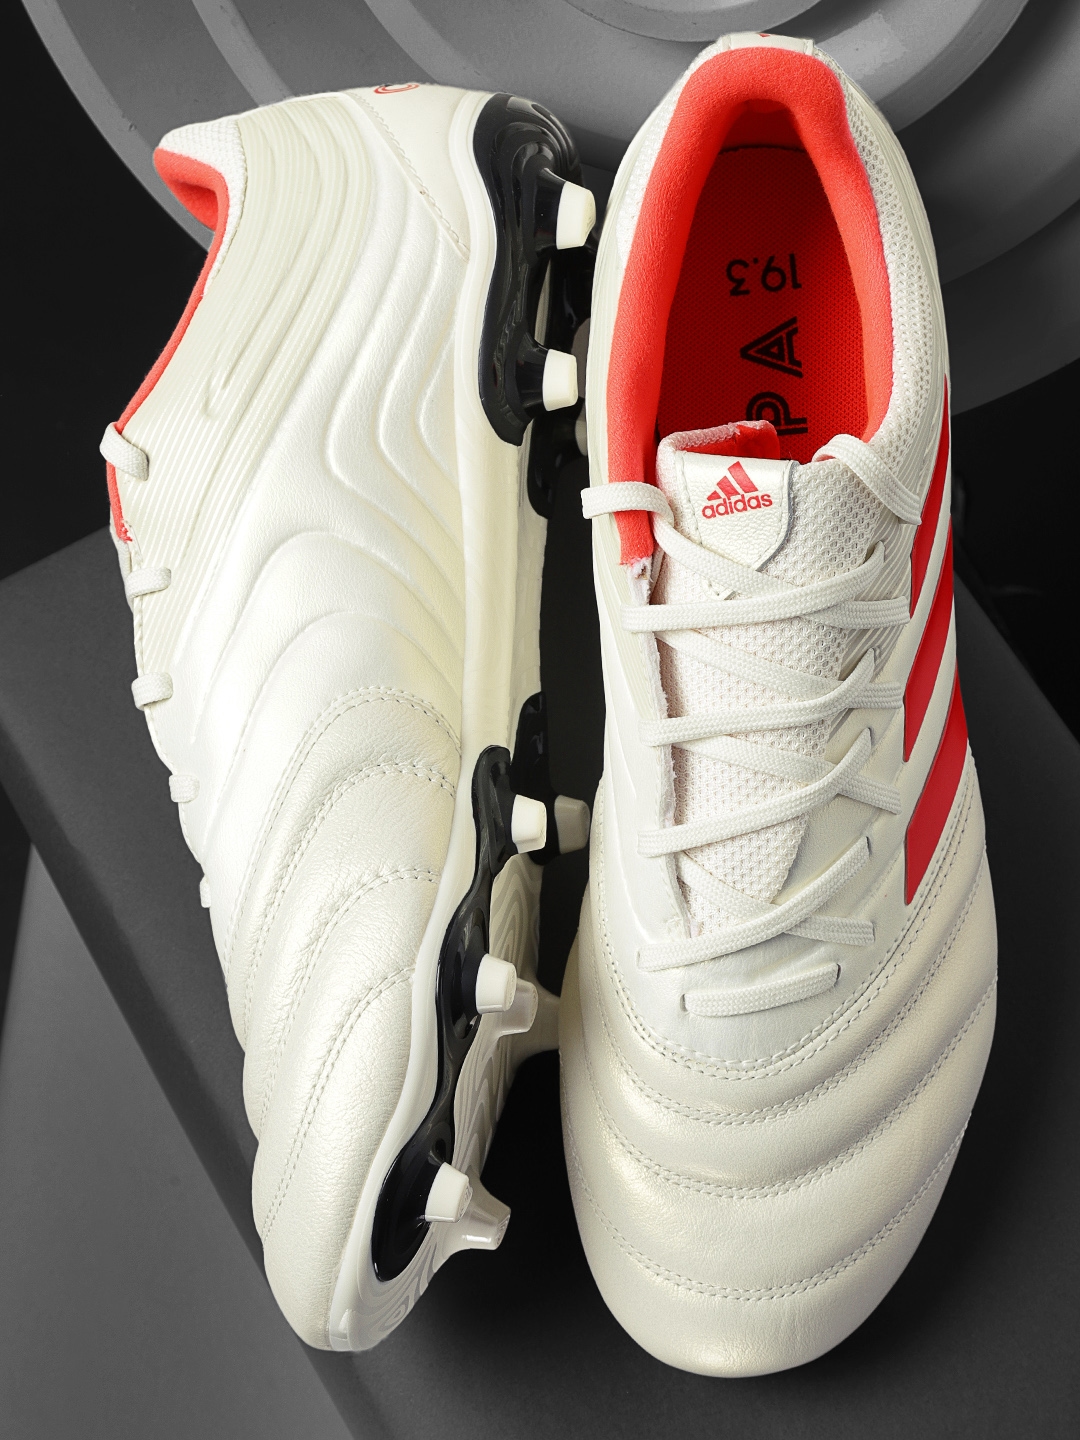 adidas football boots myntra